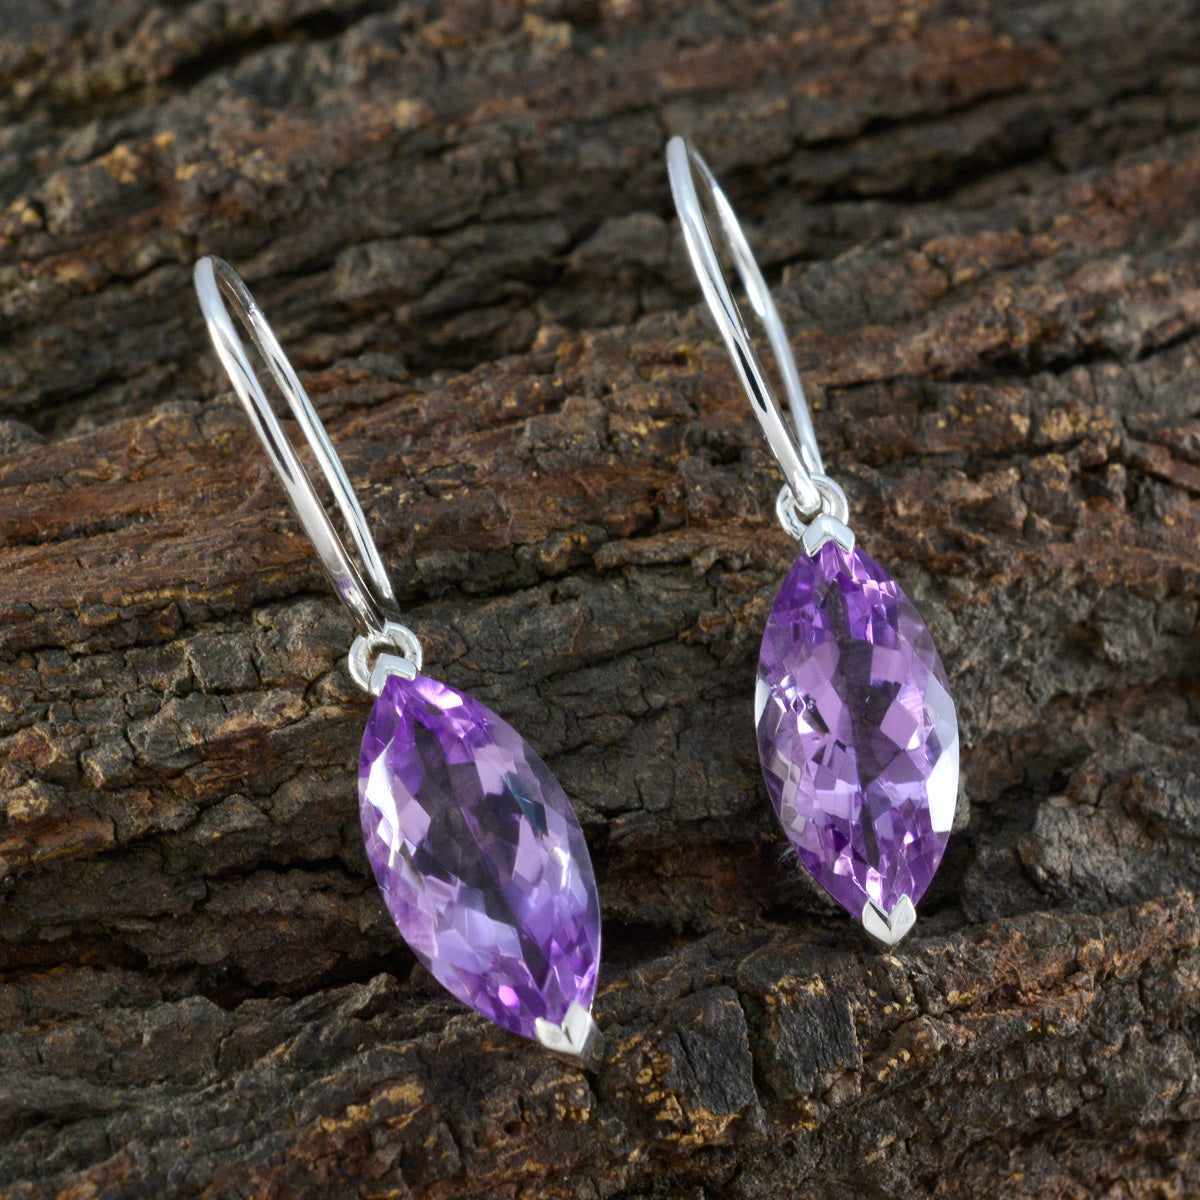 Riyo Fair 925 Sterling Silver Earring For Lady Amethyst Earring Bezel Setting Purple Earring Dangle Earring